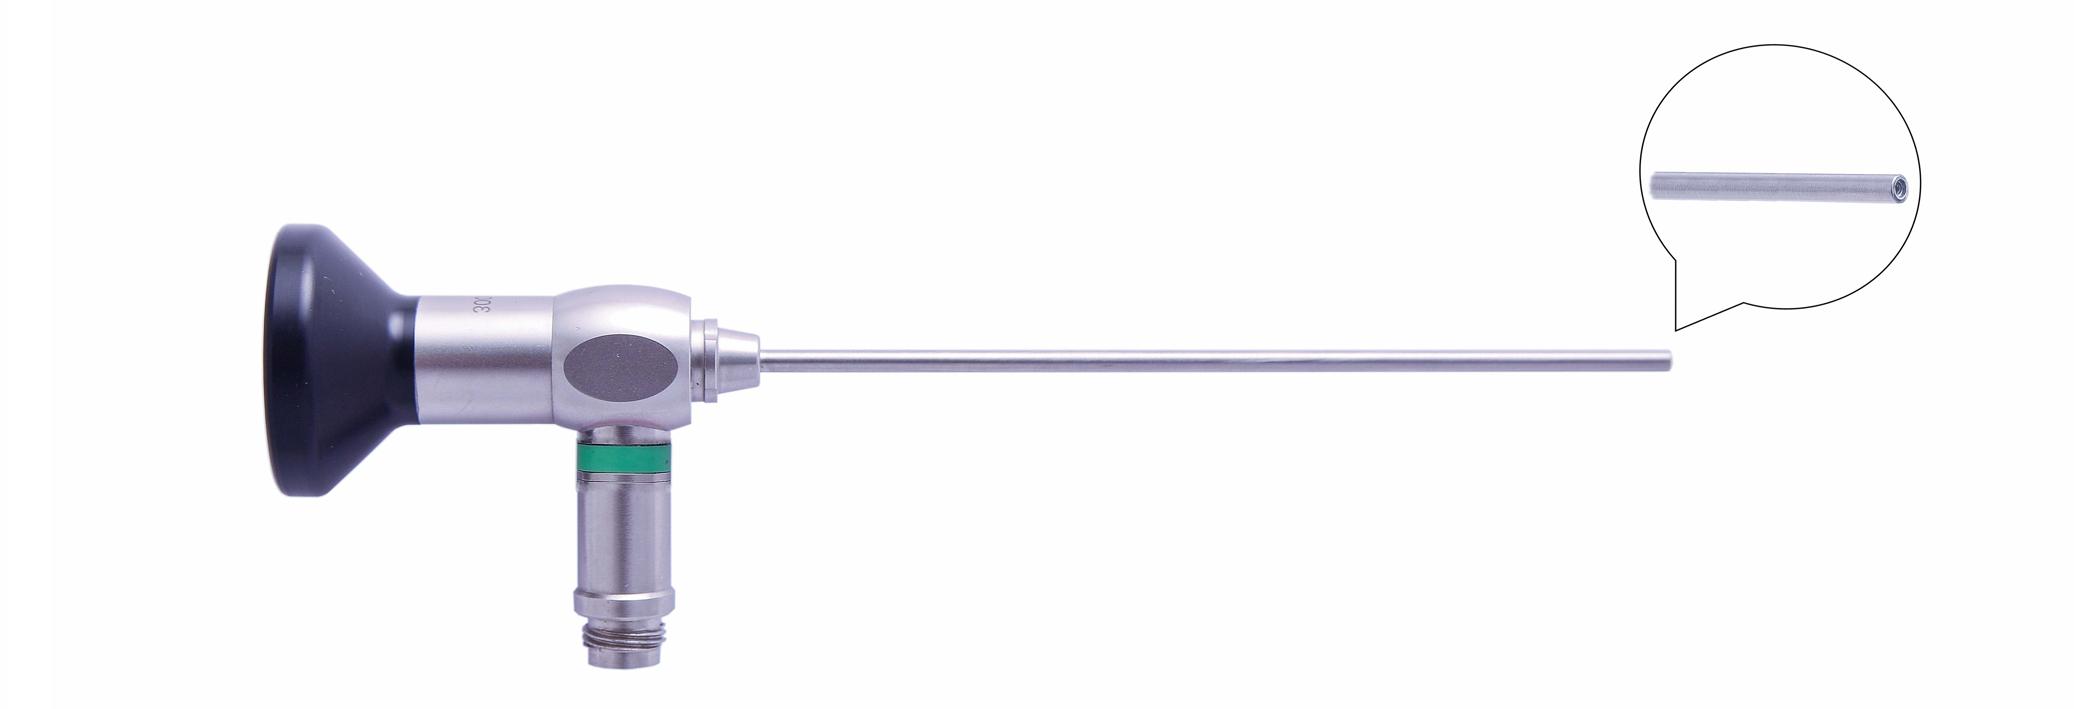 Трубка оптическая (артроскопическая, риноскопическая) ТОАР-003 диам. 2.7 мм, с углом наблюдения 0 гр. (дл. 110 мм)